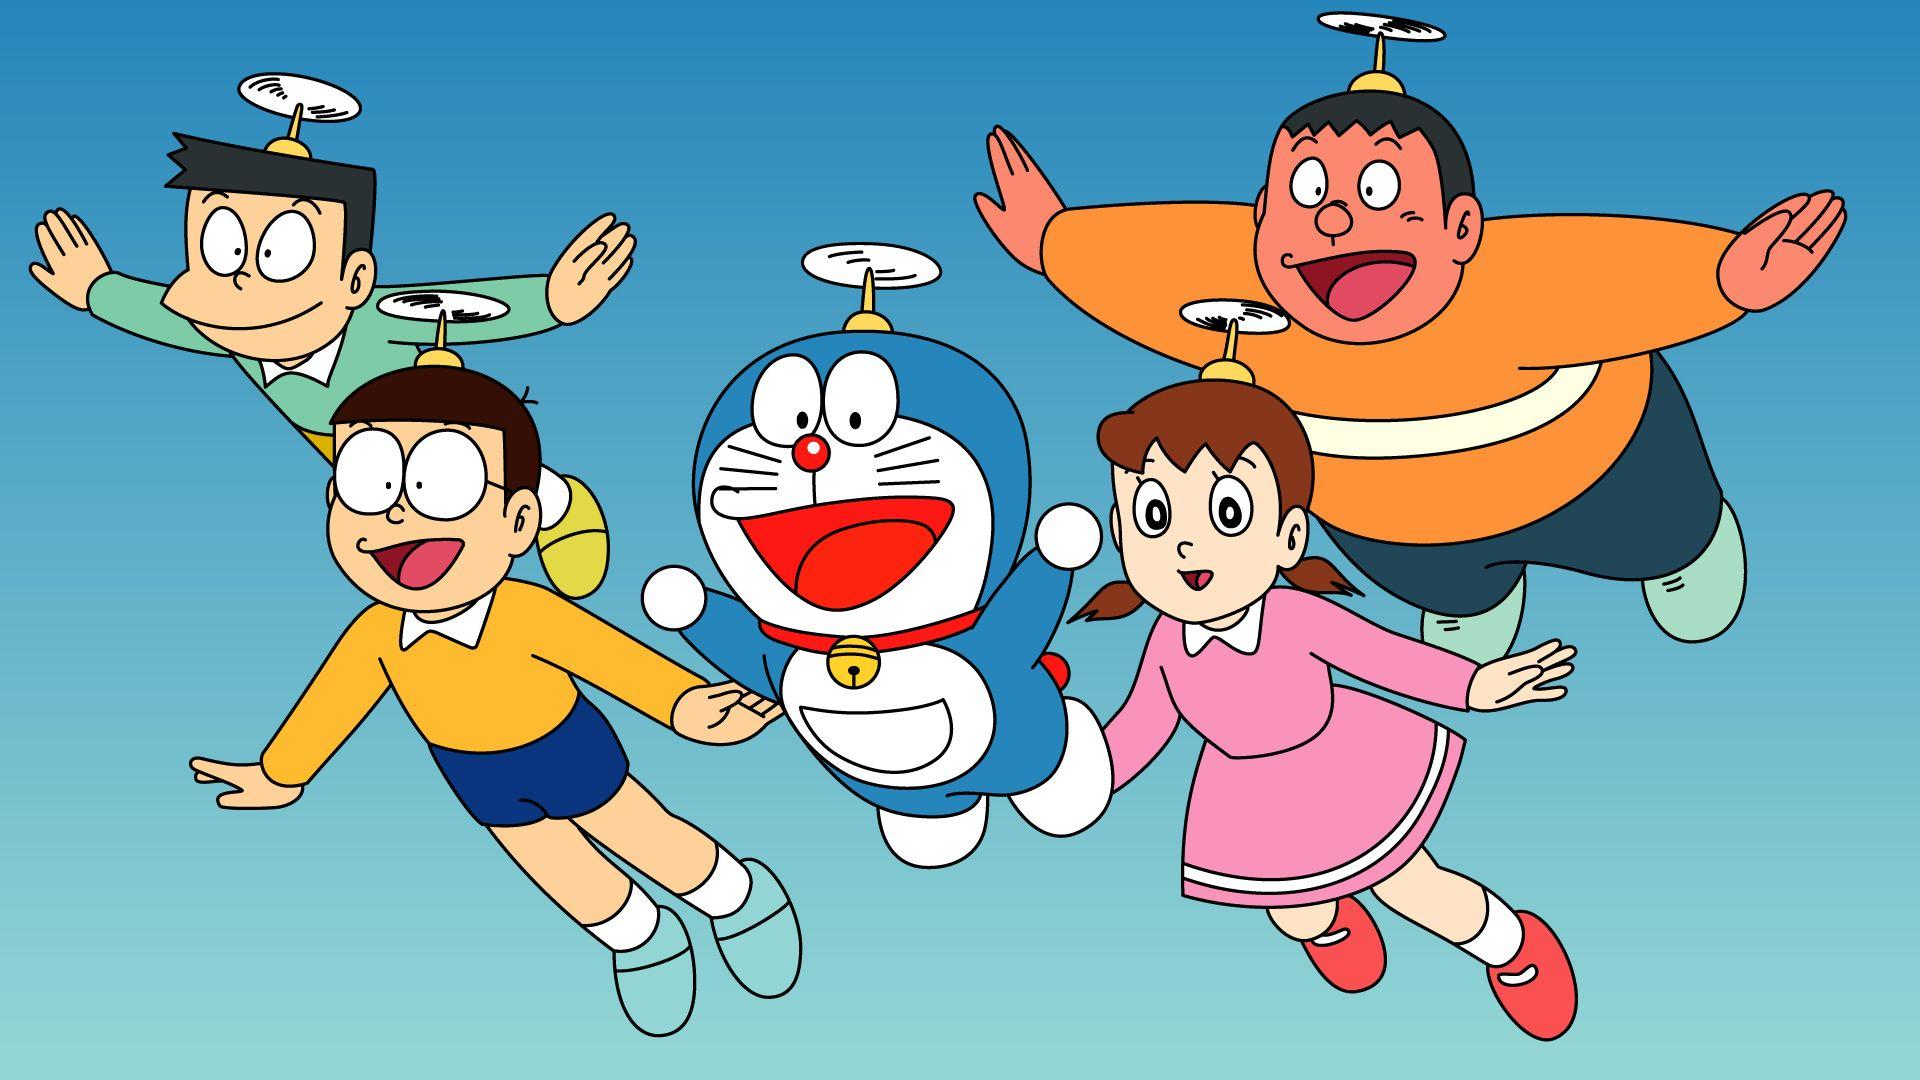 Bạn thích truyền tải lối sống đáng yêu và tri thức thông qua Doraemon? Bộ sưu tập hình nền Doraemon cho máy tính của chúng tôi sẽ khiến bạn cảm thấy như một phần của thế giới hoạt hình đầy màu sắc và niềm vui!